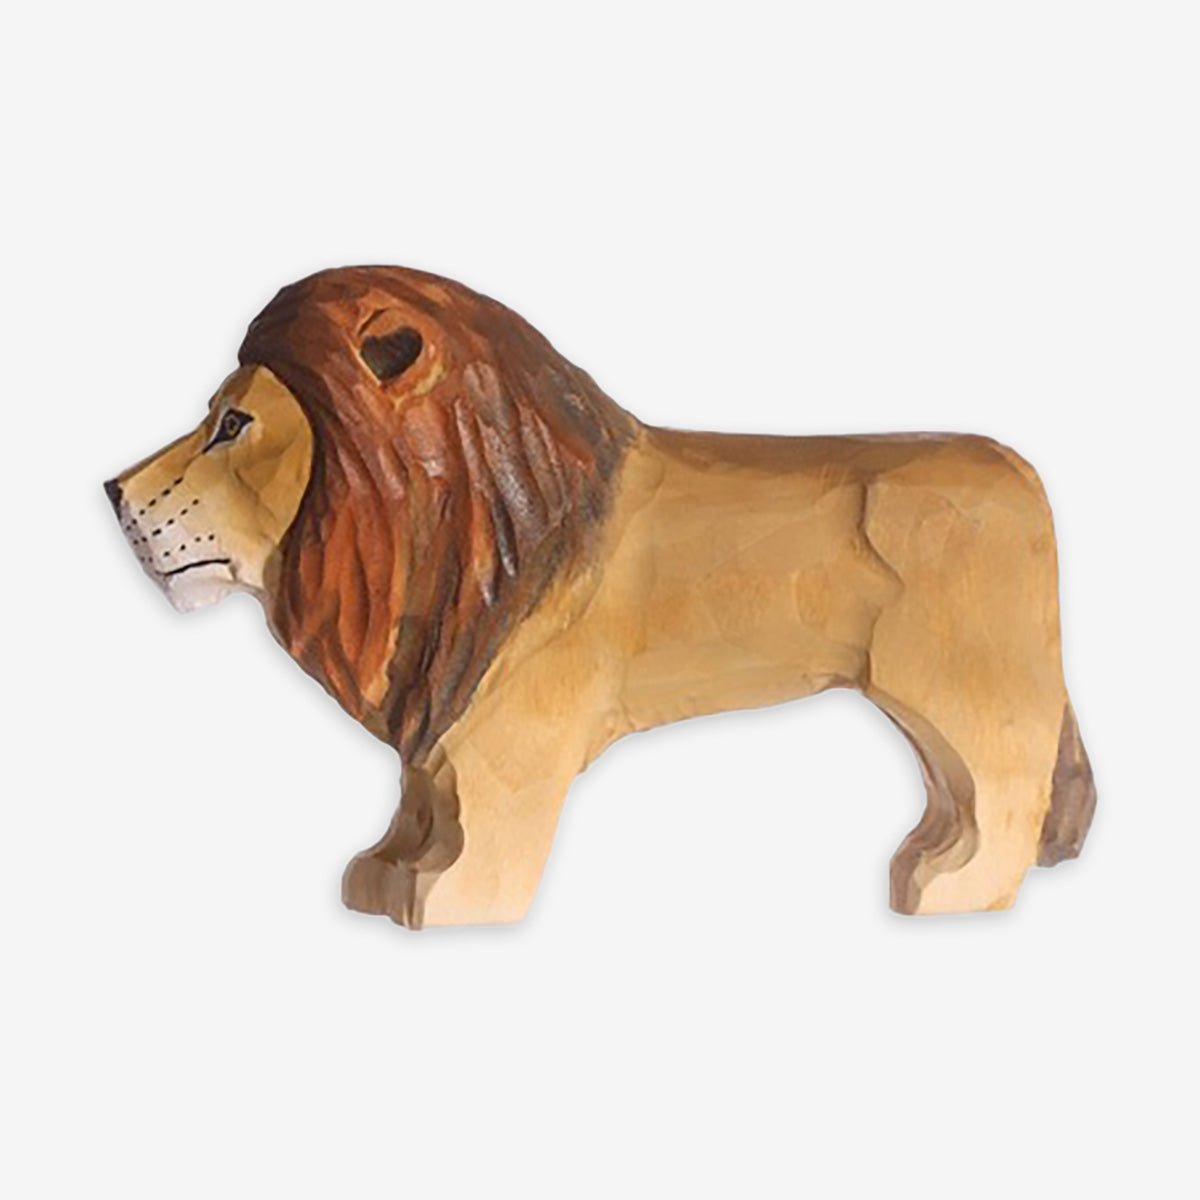 Wudimals Wooden Animal - Lion